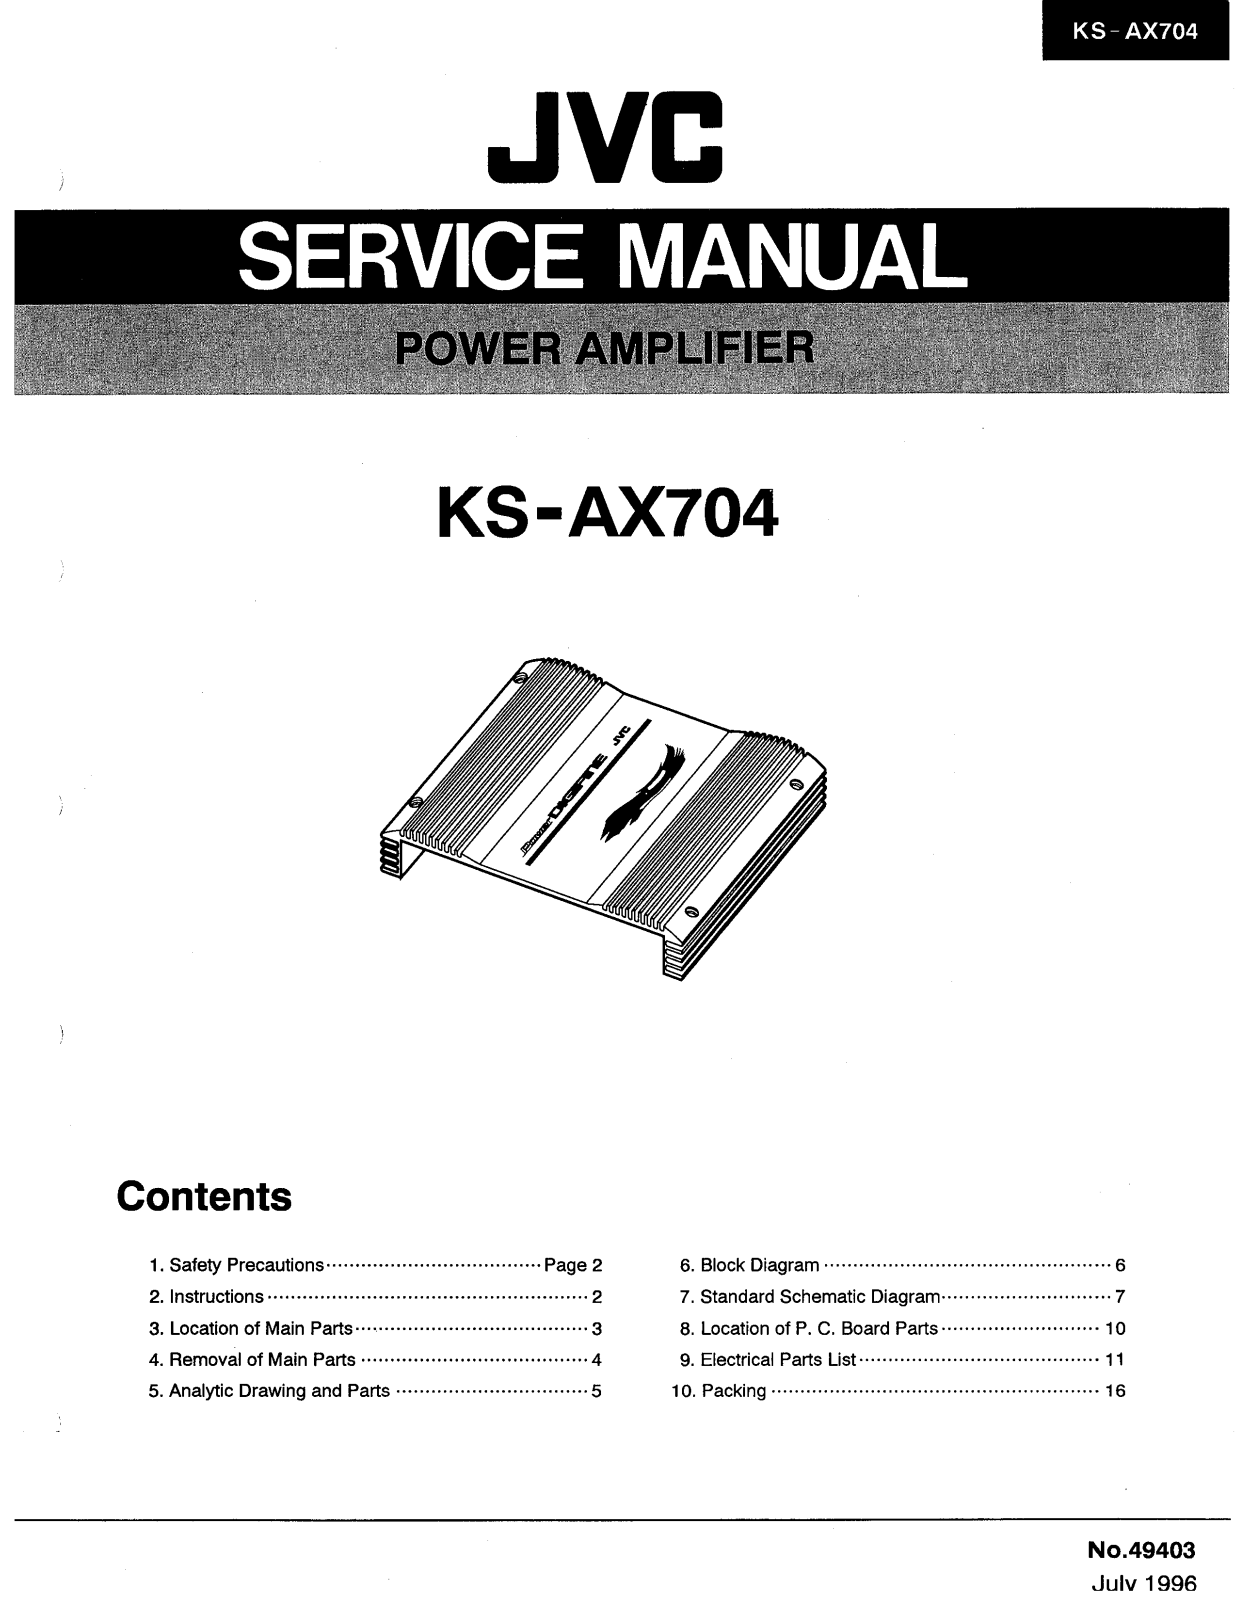 JVC KS-AX704 Service Manual